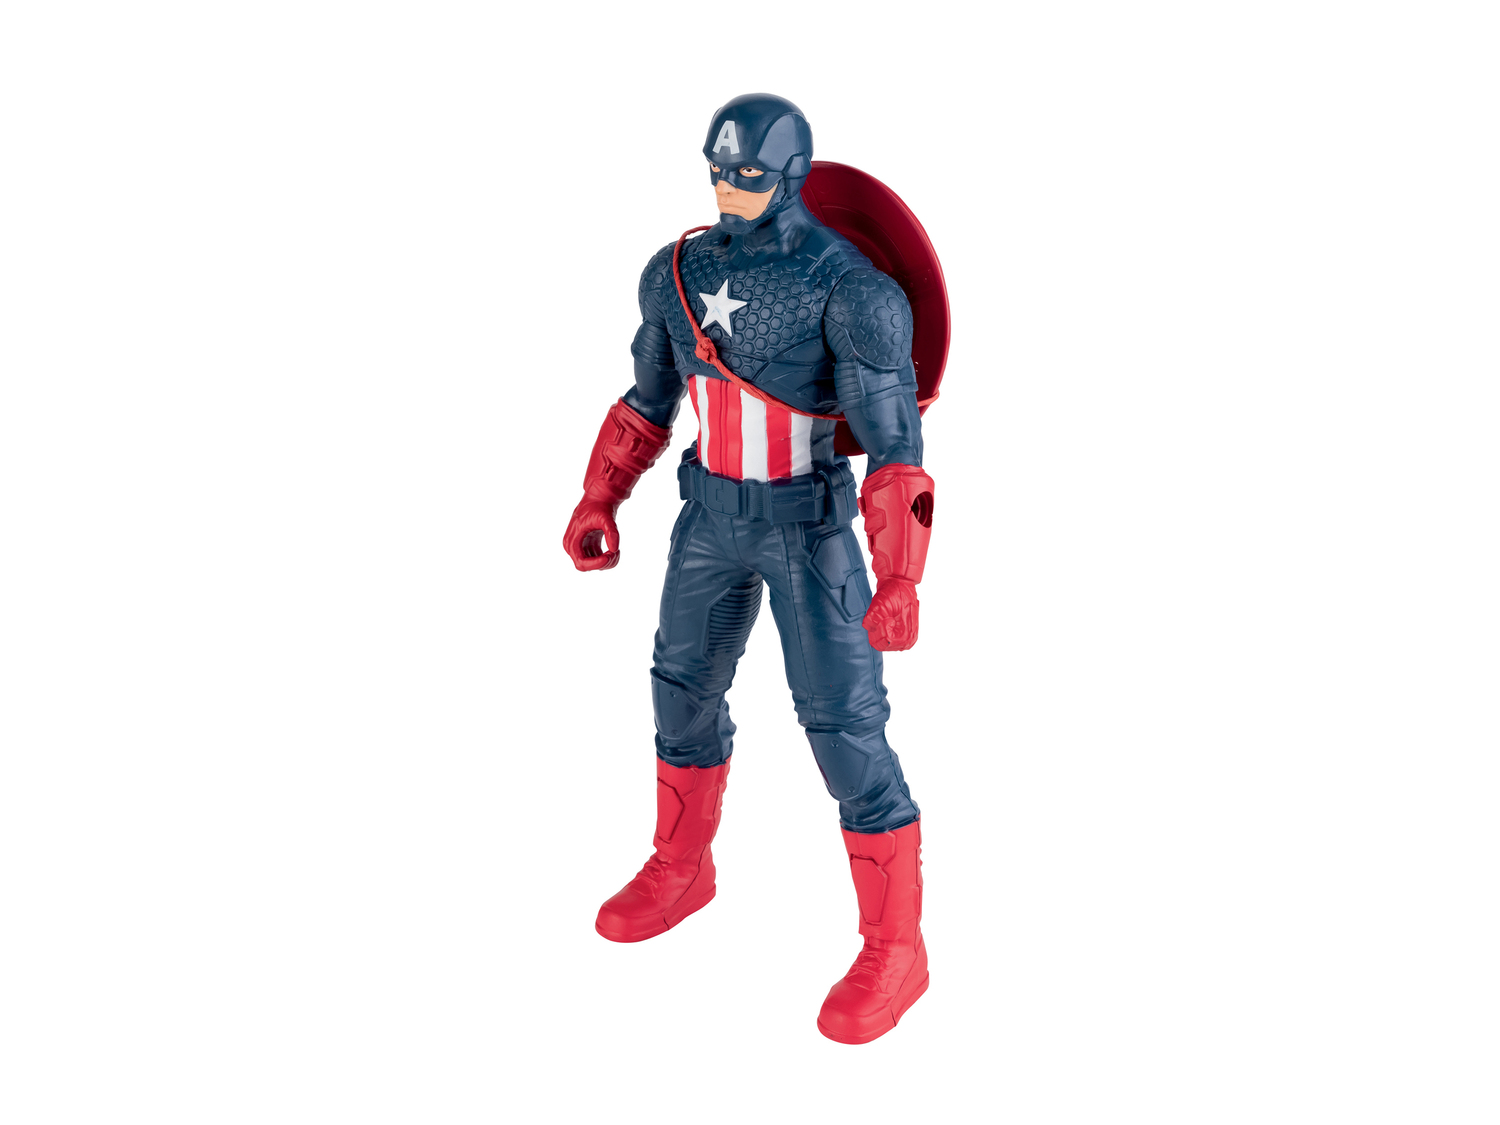 Personaggi Avengers Hasbro, prezzo 8.99 &#8364;  

Caratteristiche

- Marvel